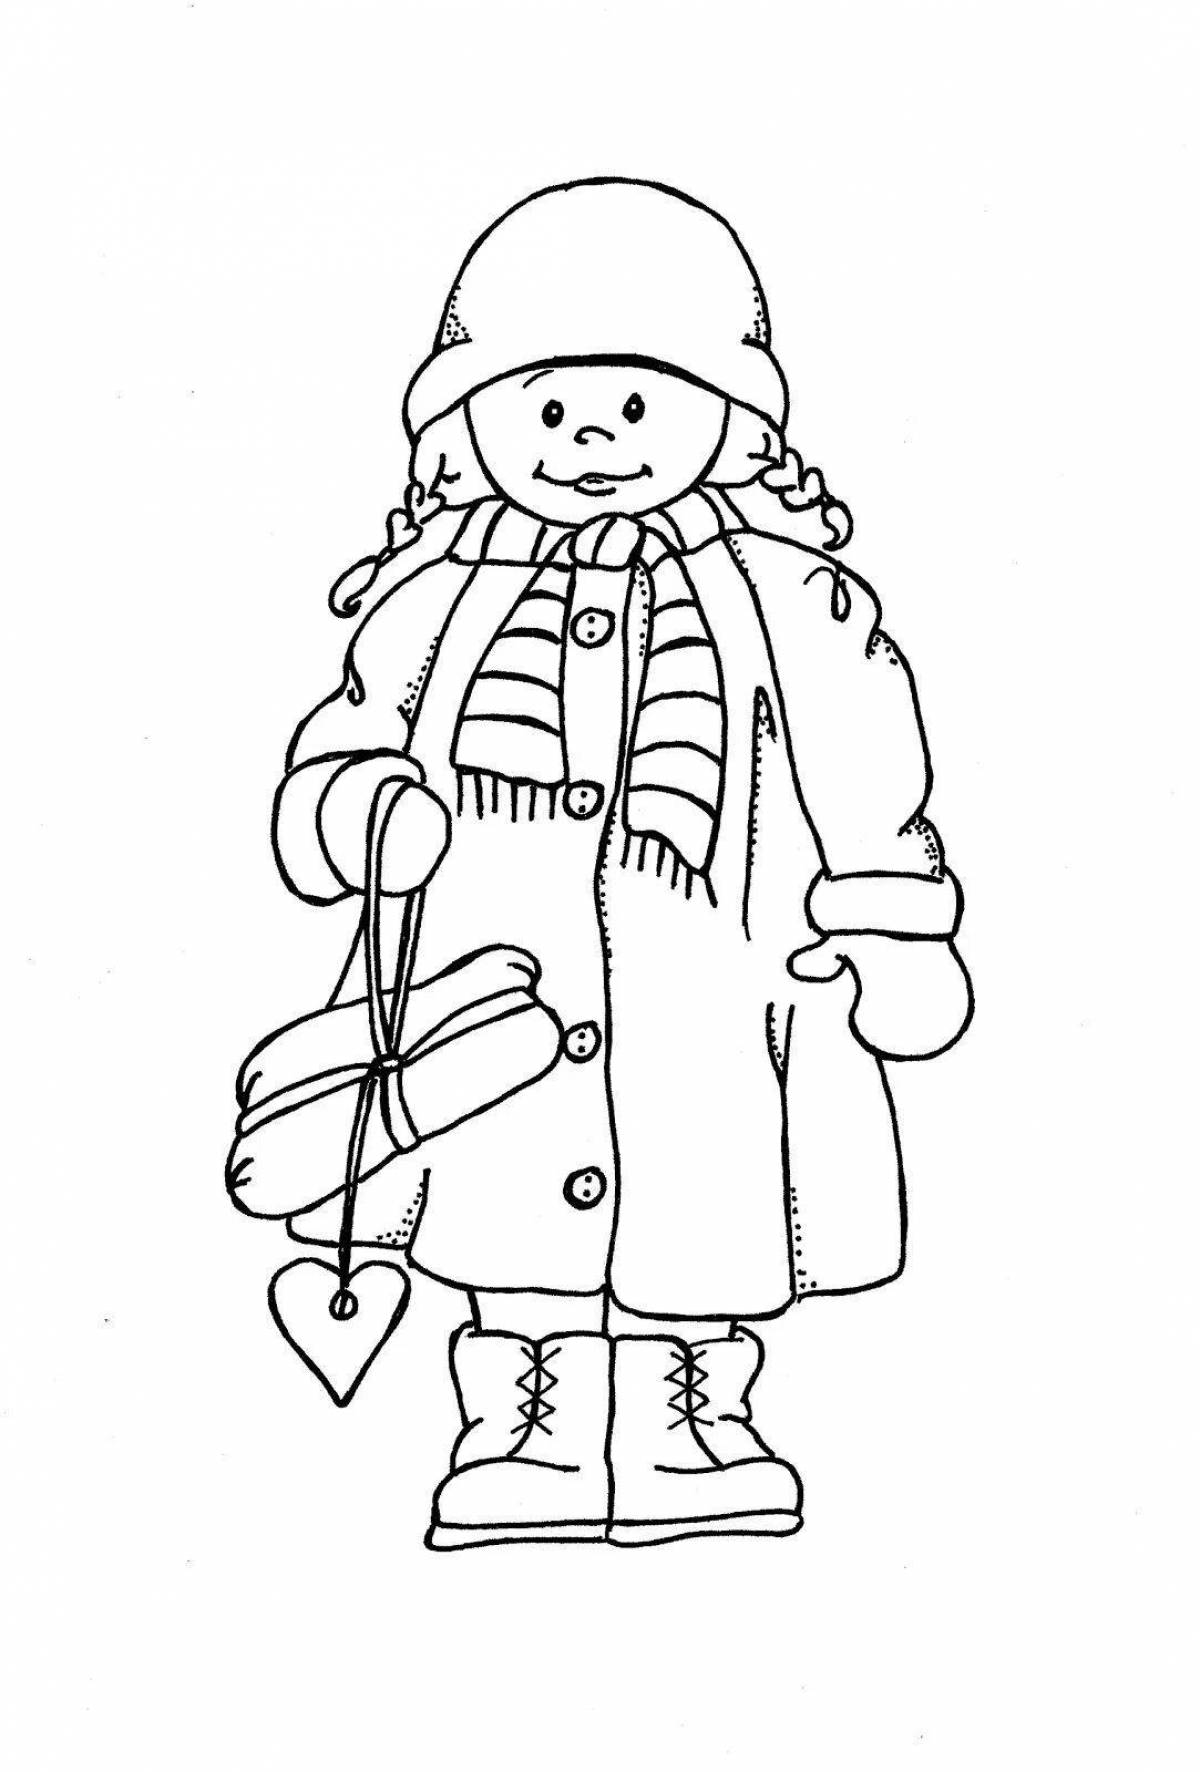 Анимированная страница раскраски зимней одежды для детей 6-7 лет